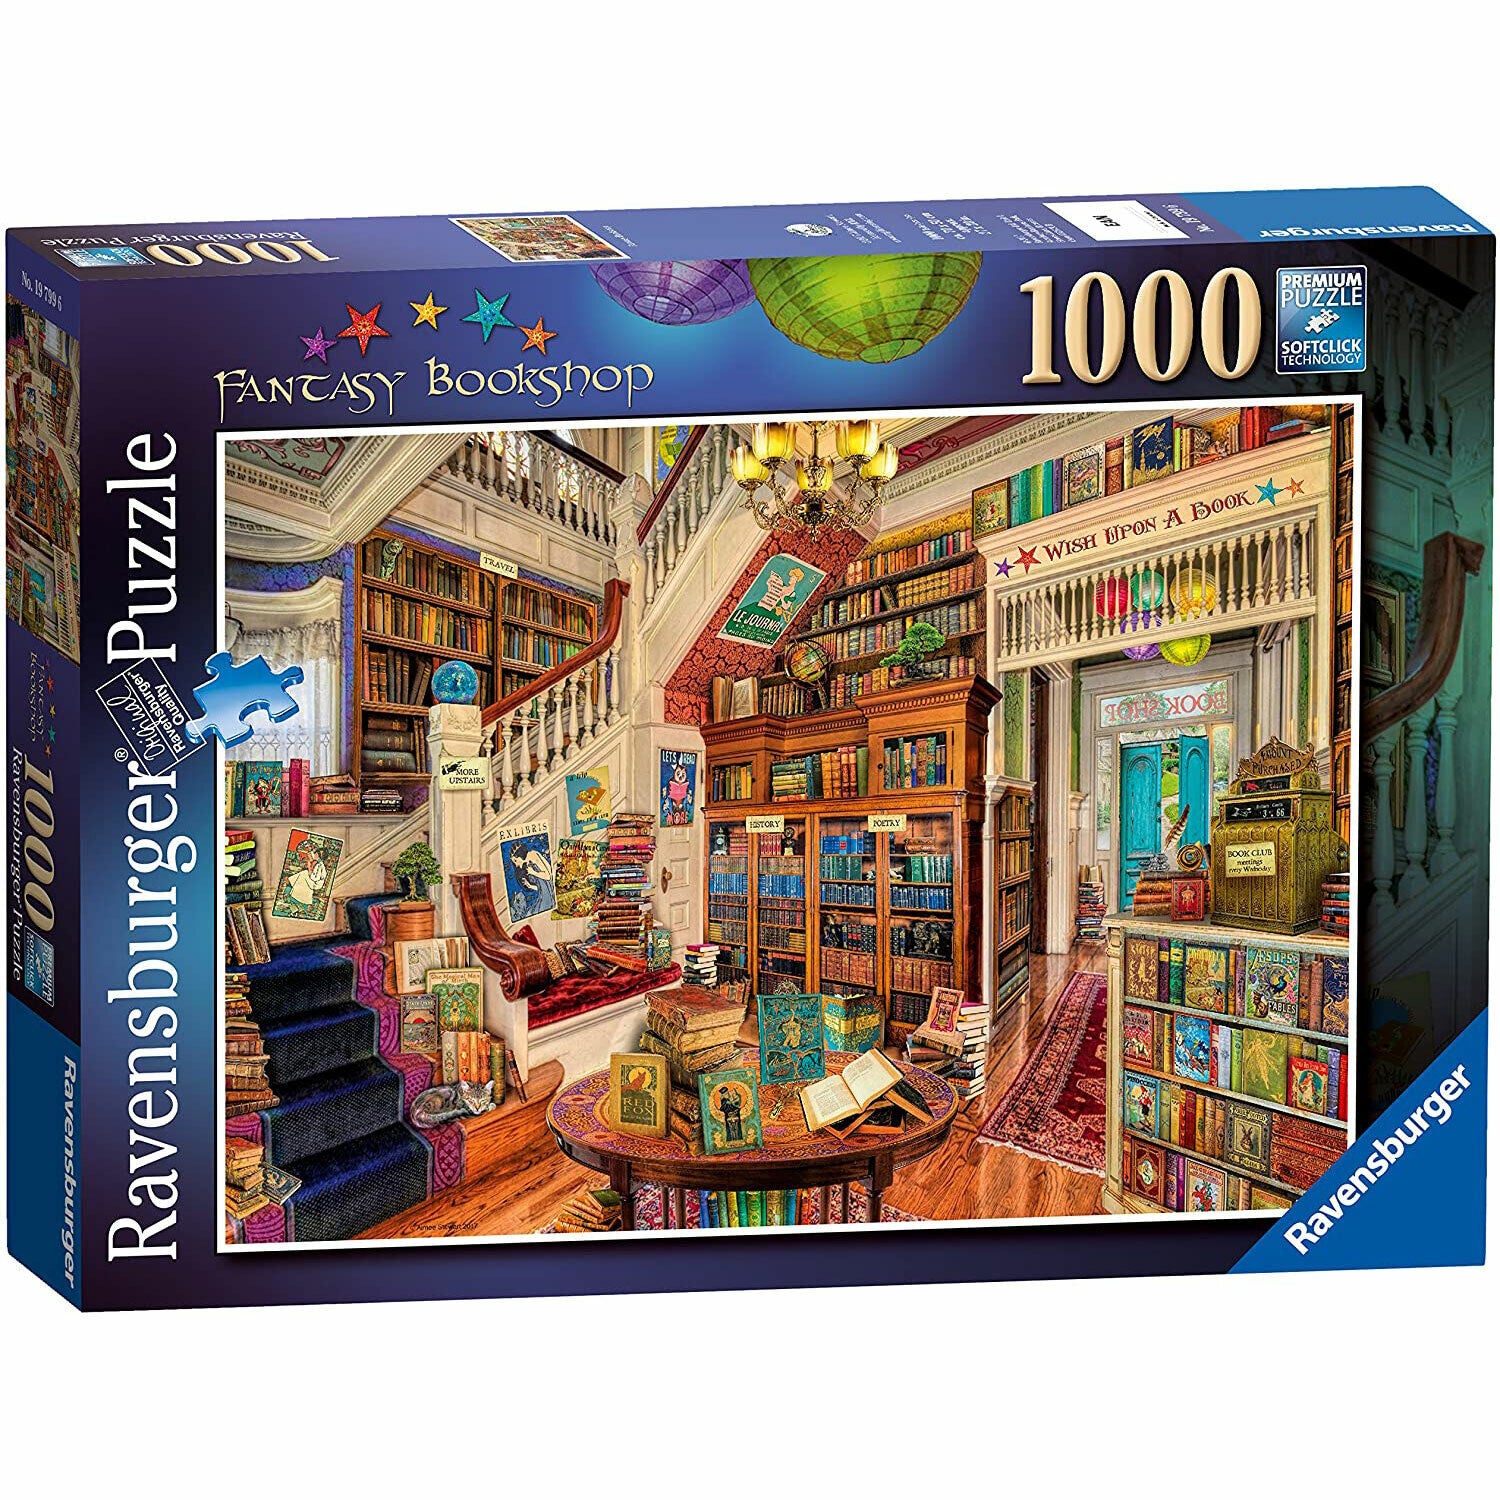 Ravensburger Fantasy Bookshop 1000 Piece Puzzle - NEW!